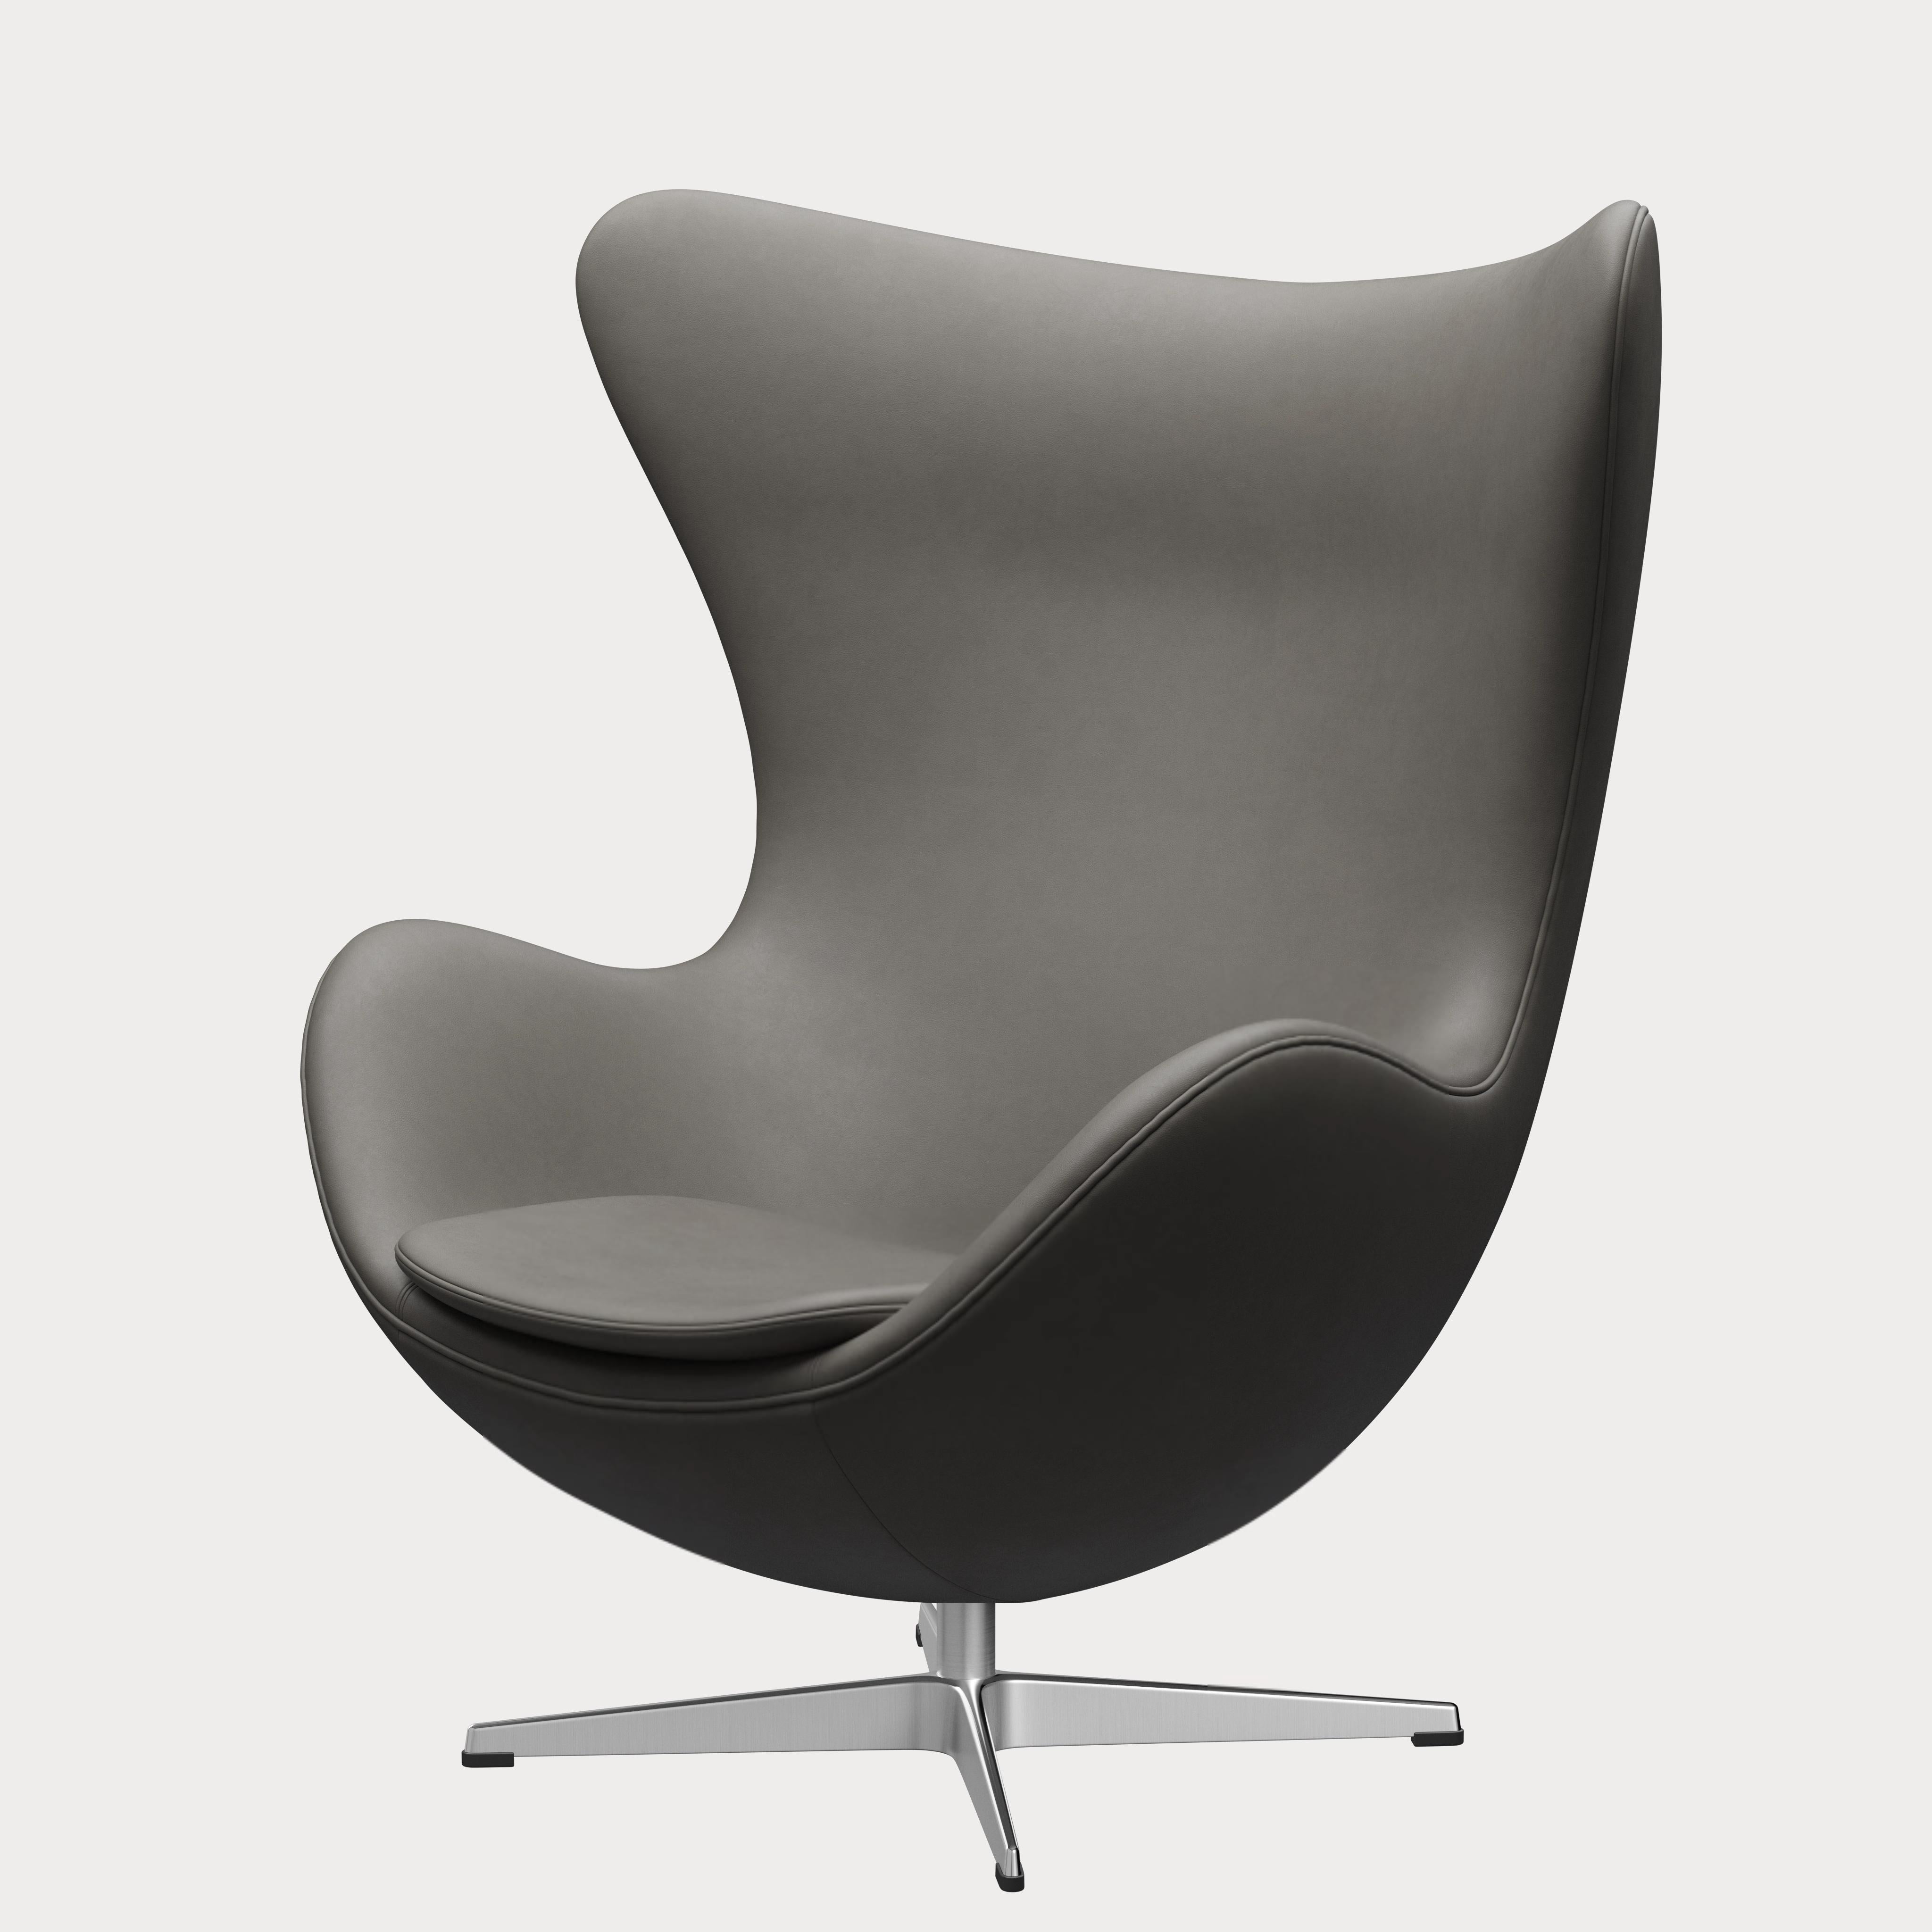 Arne Jacobsen 'Egg' Chair for Fritz Hansen in Leather Upholstery (Cat. 3) For Sale 1